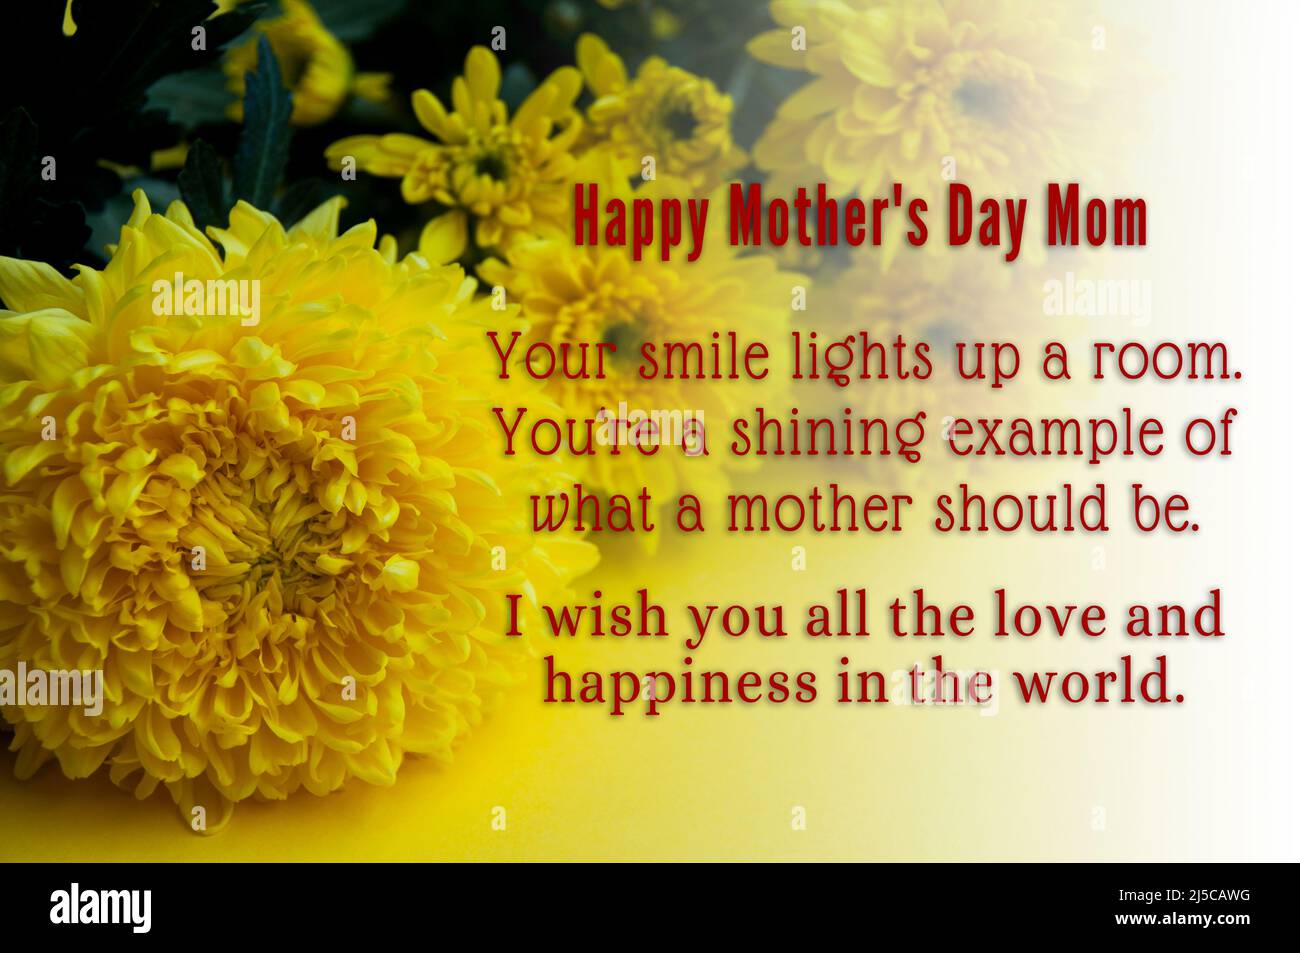 Happy Mother's Day Textwünsche mit gelben Blumen Hintergrund. Stockfoto